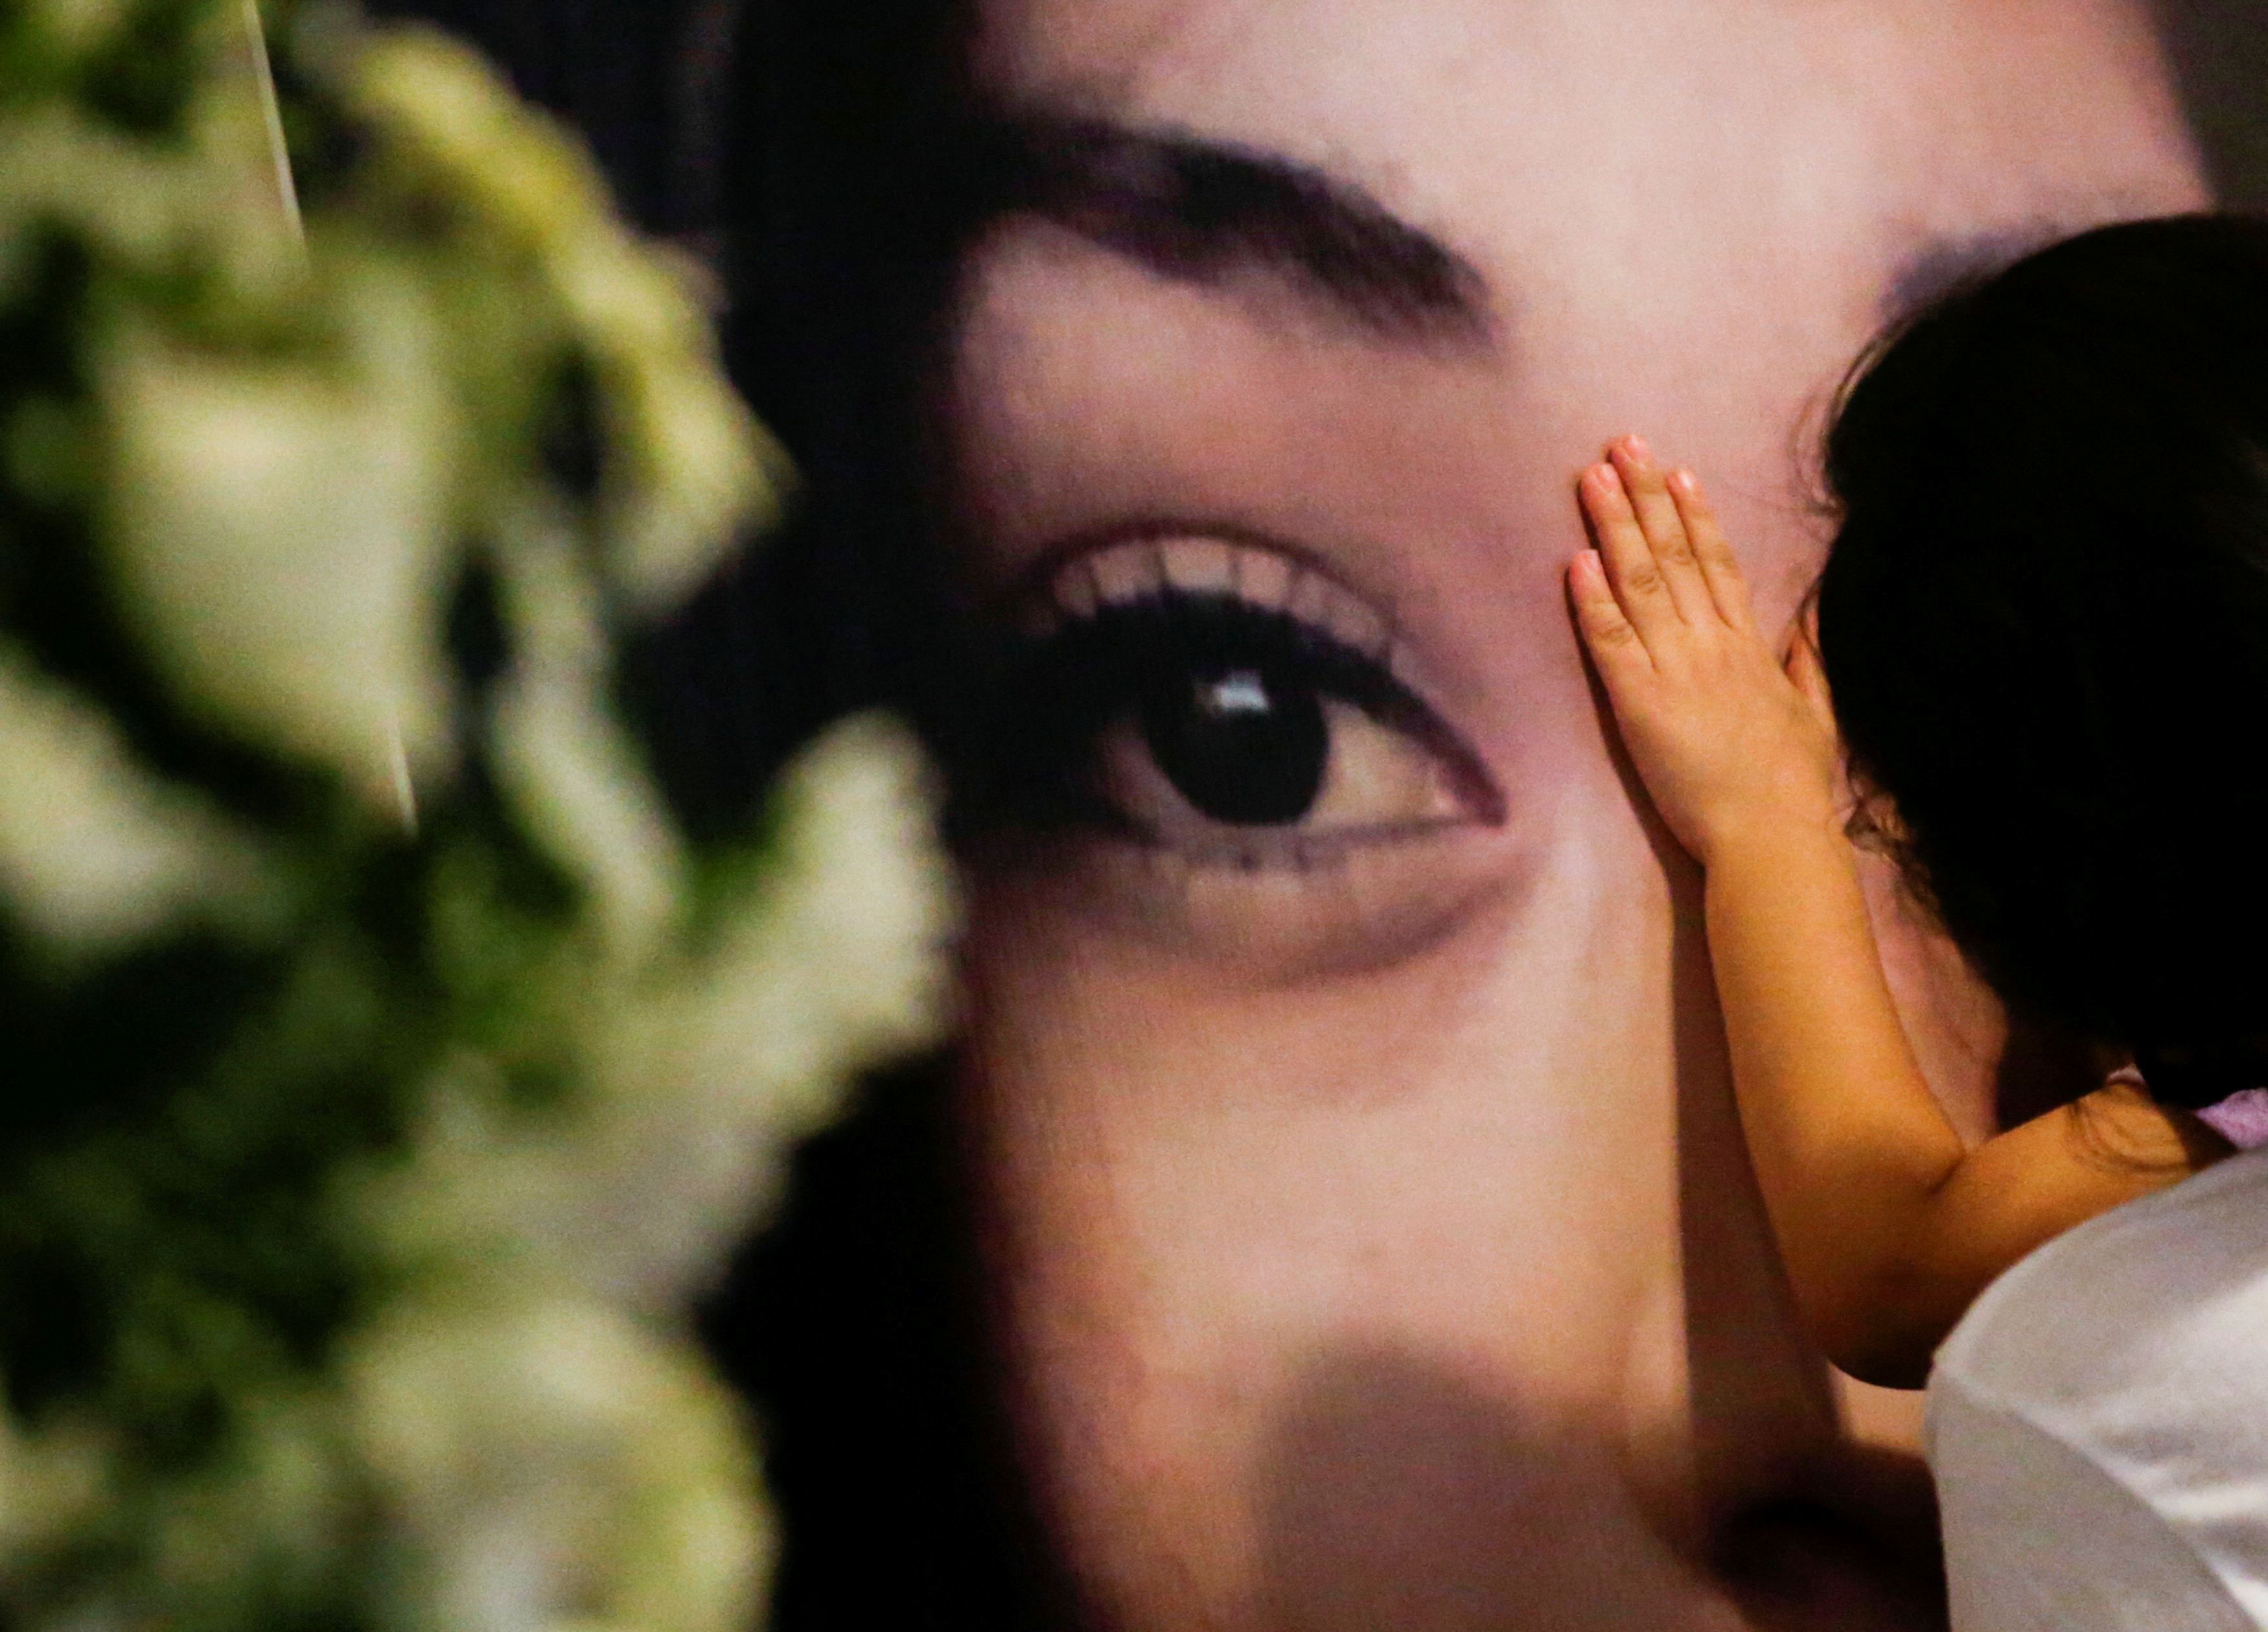  La última vez que Yolanda Martínez fue vista con vida fue el 31 de marzo; el 8 de mayo, encontraron su cuerpo  (Foto: REUTERS/Daniel Becerril     TPX IMAGES OF THE DAY)